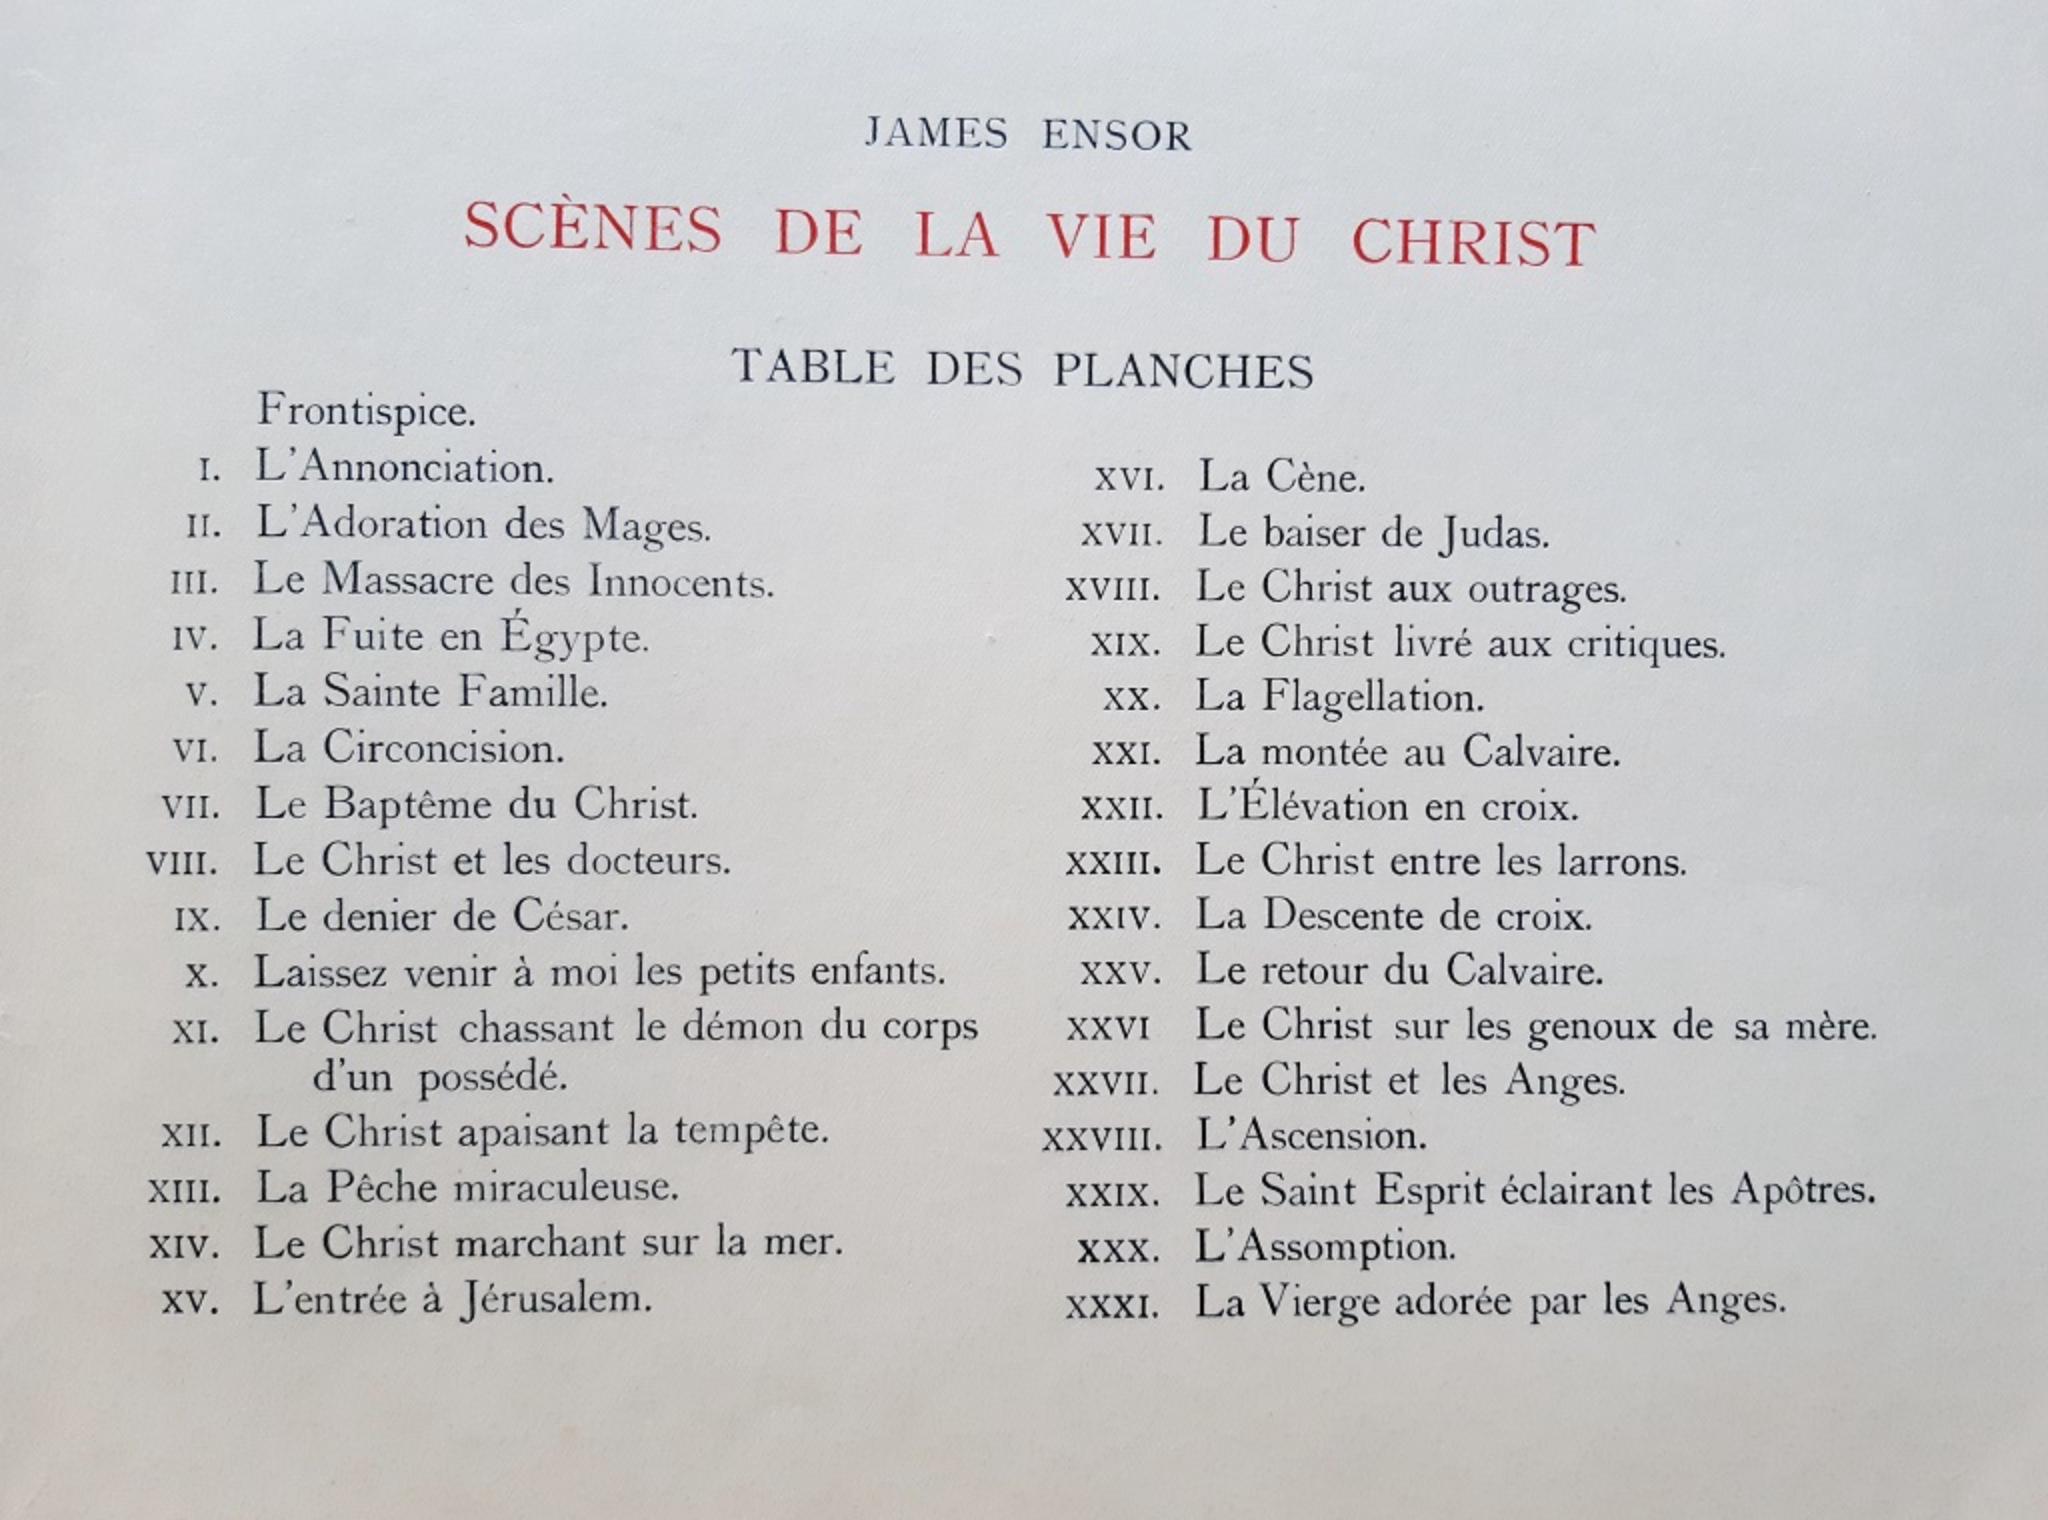 Scènes de la vie du Christ - Vintage Rare Book Illustrated by James Ensor - 1921 For Sale 9